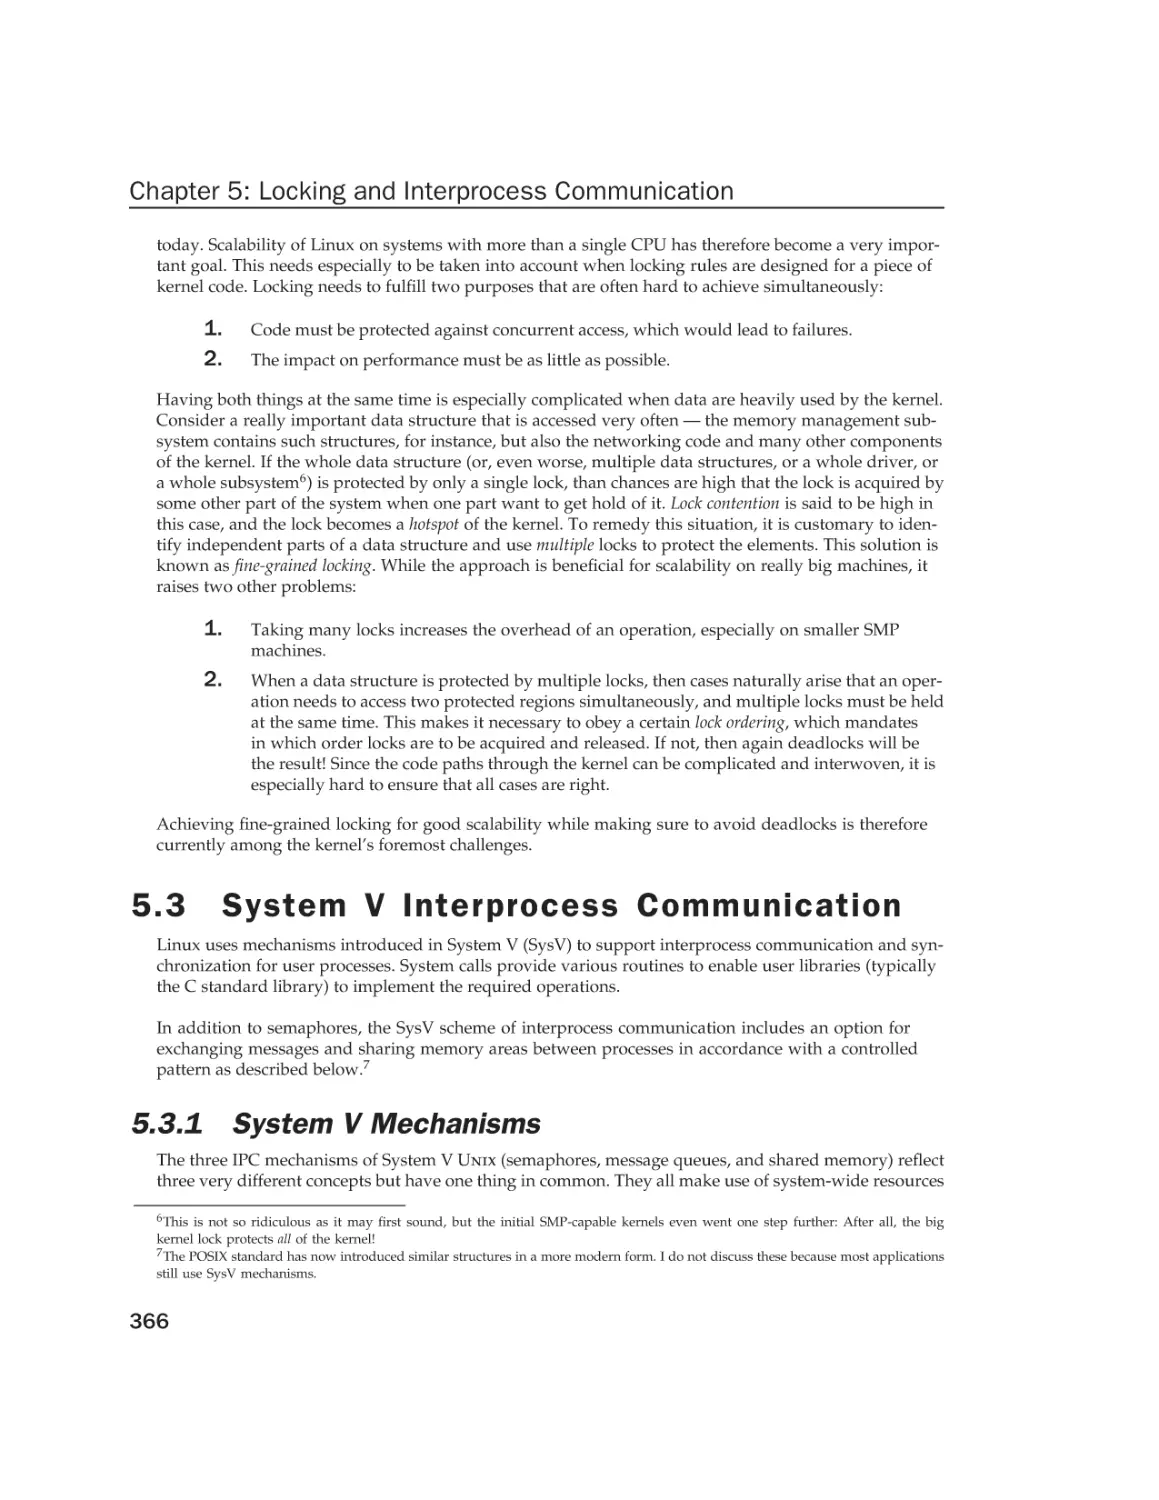 5.3 System V Interprocess Communication